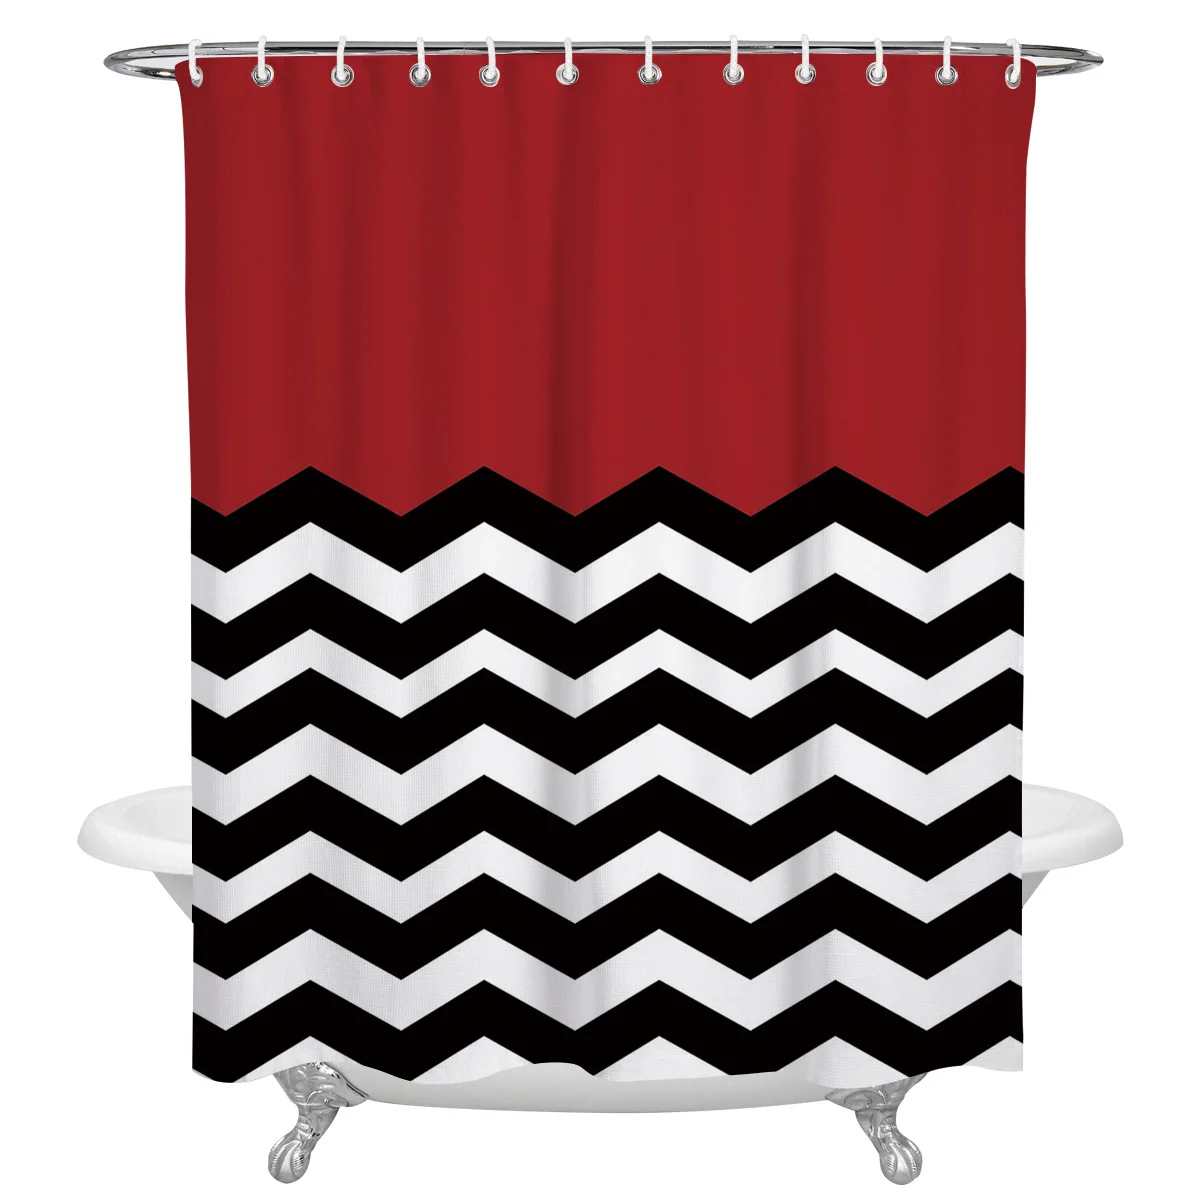 

Водонепроницаемая душевая занавеска с крючками, декоративная штора из полиэстера, в ванную комнату, красный, белый, черный цвета